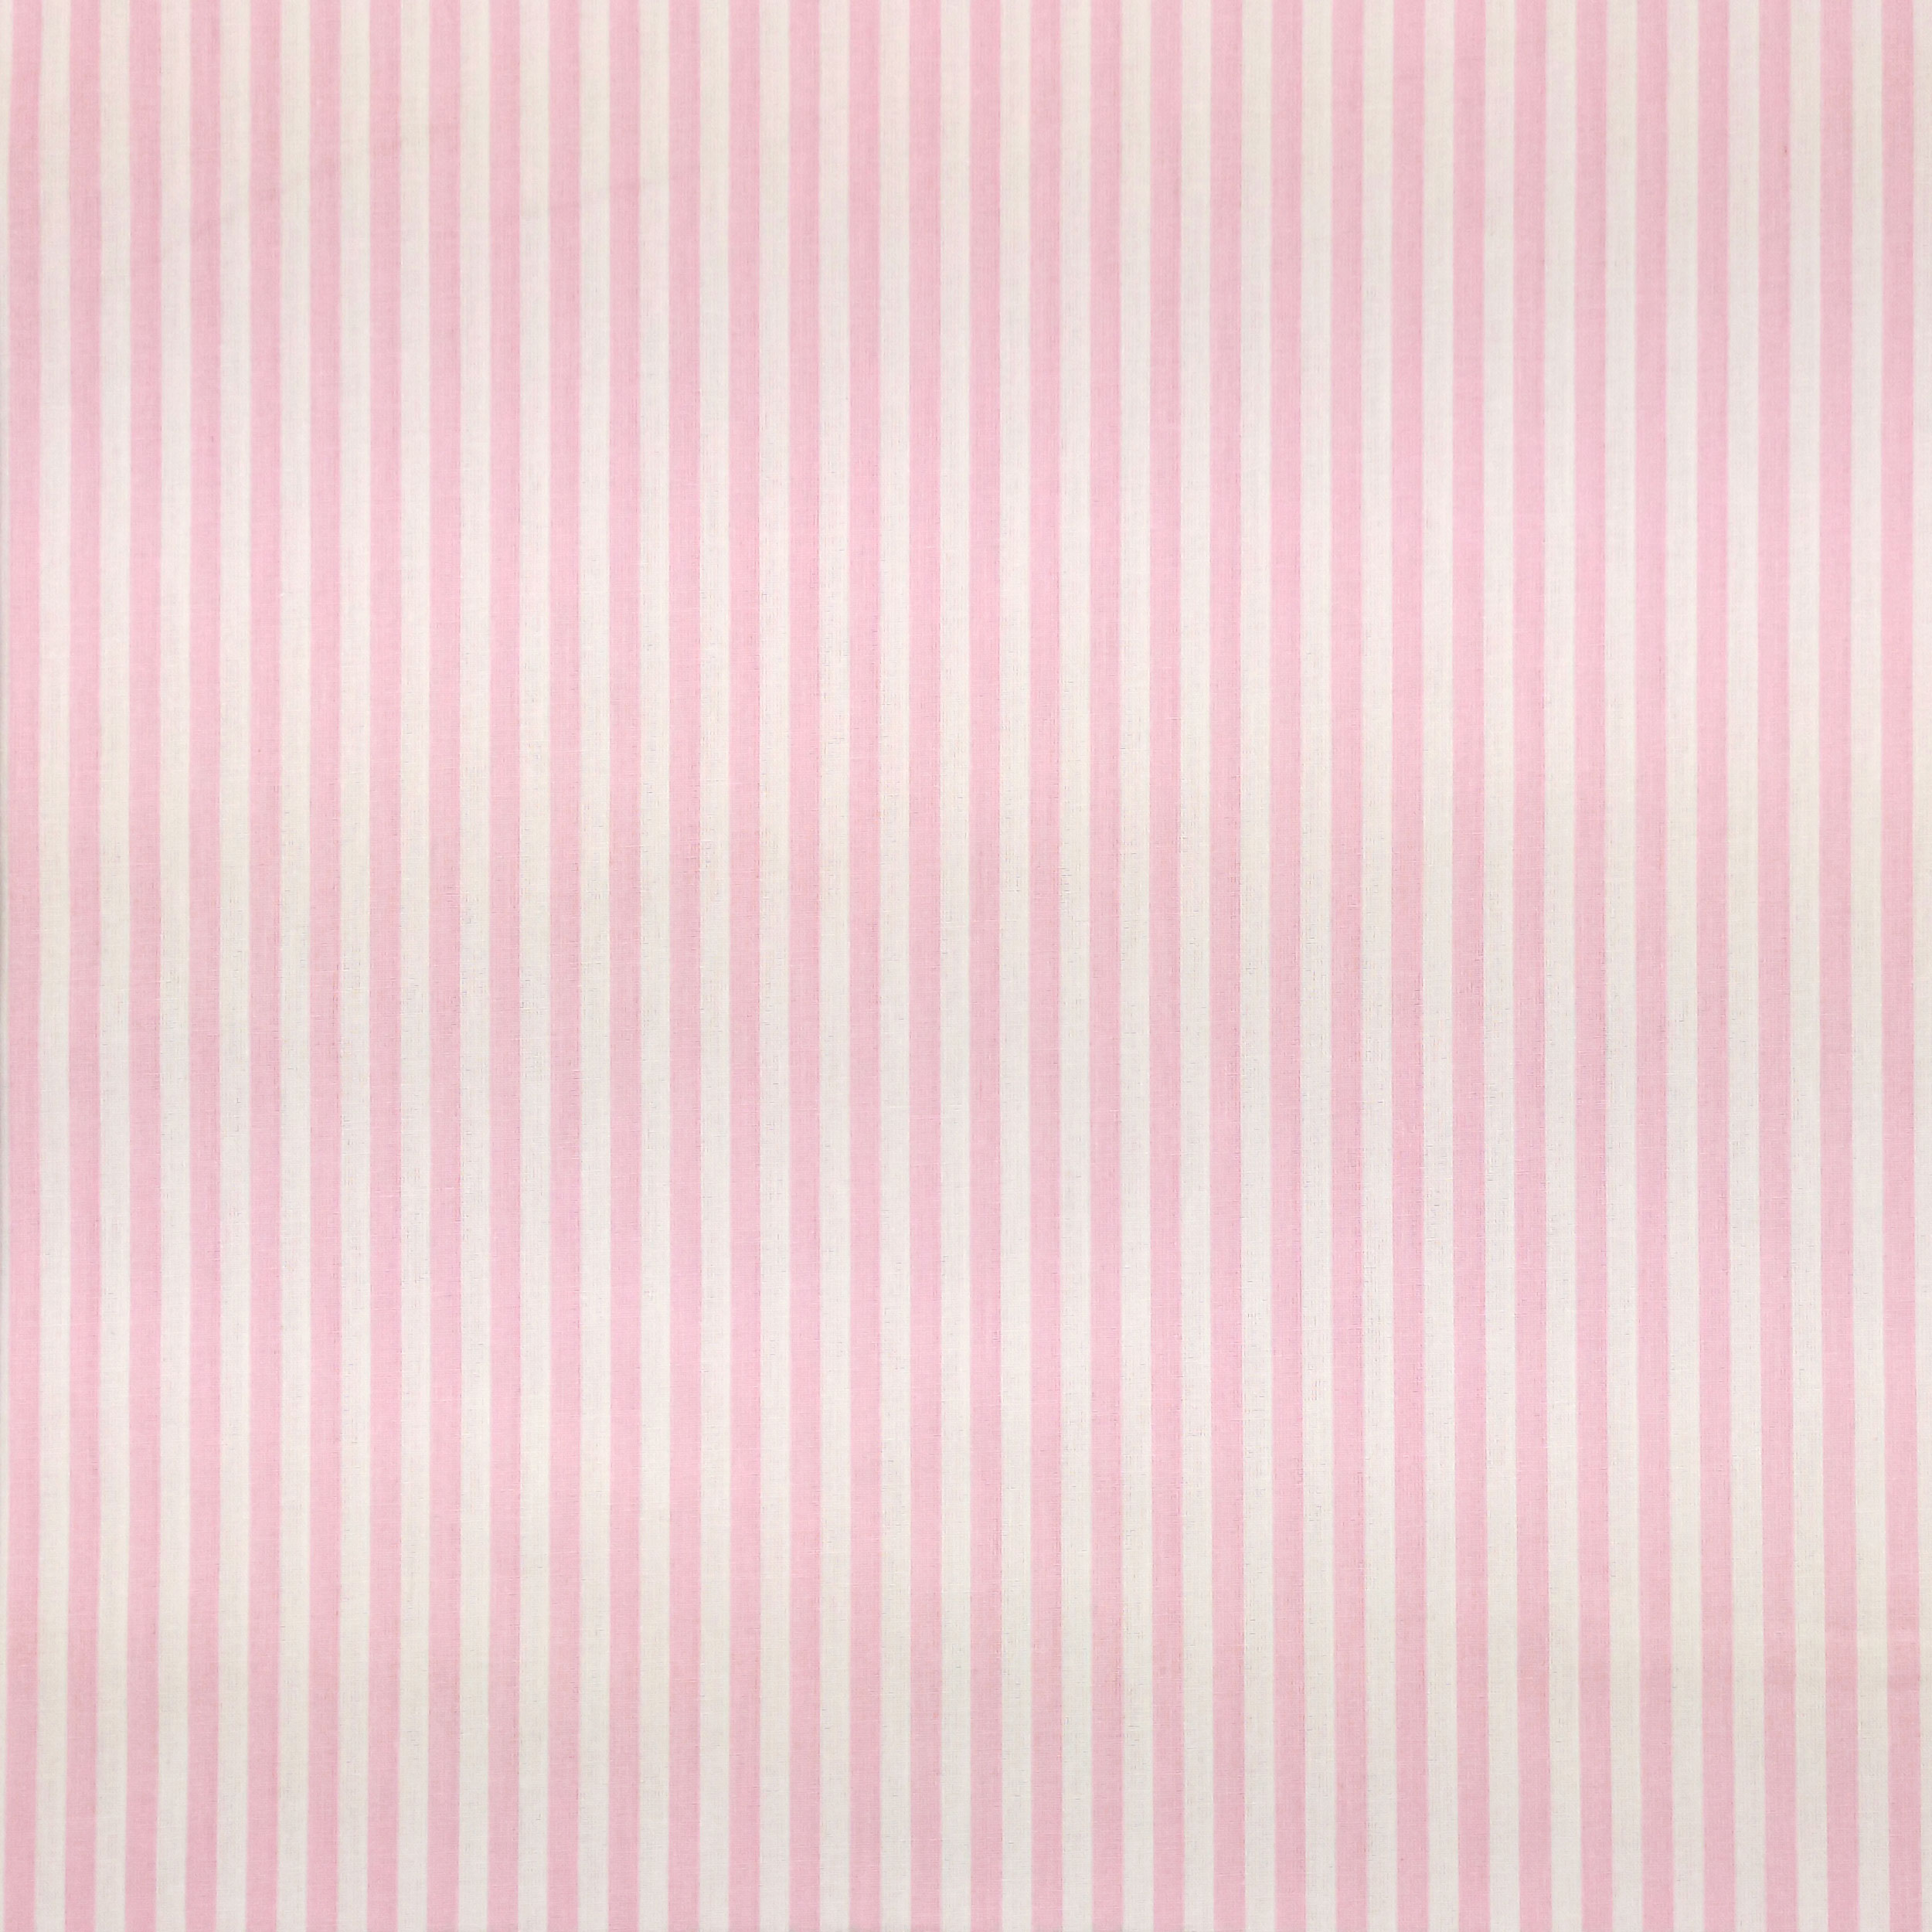 cotone righe rosa chiaro